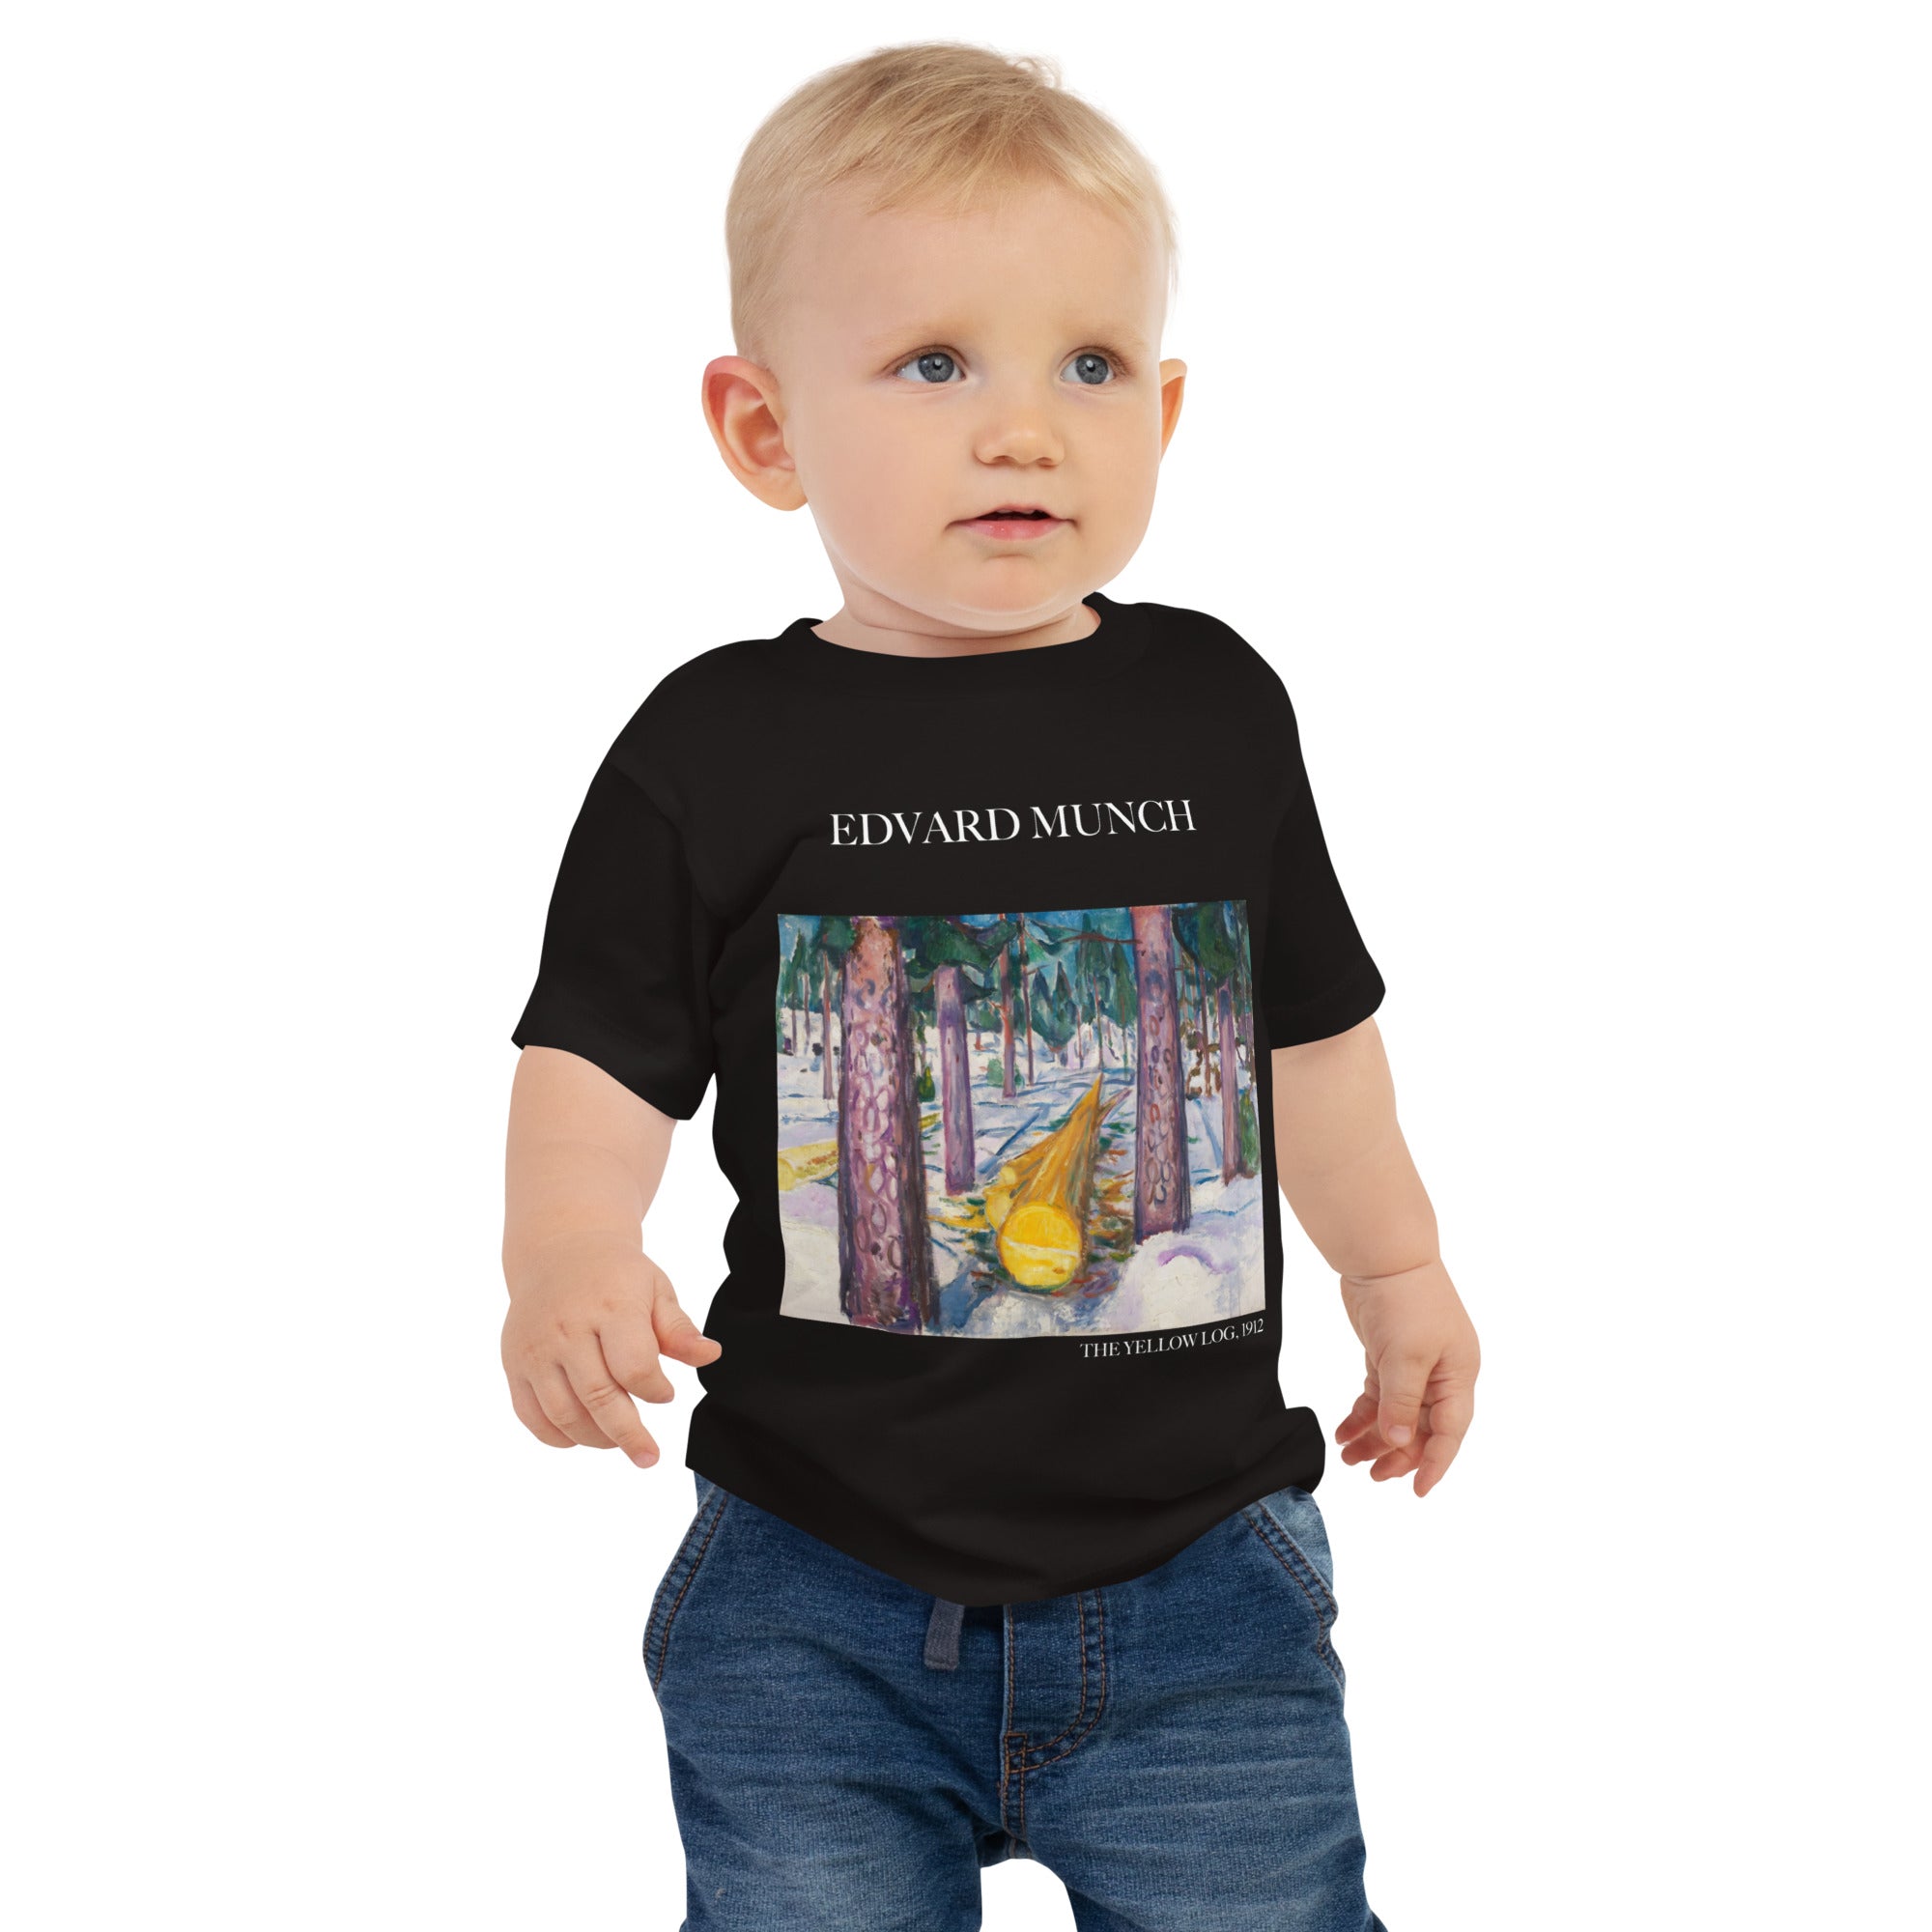 Edvard Munch 'The Yellow Log' Famous Painting Baby Staple T-Shirt | Premium Baby Art Tee